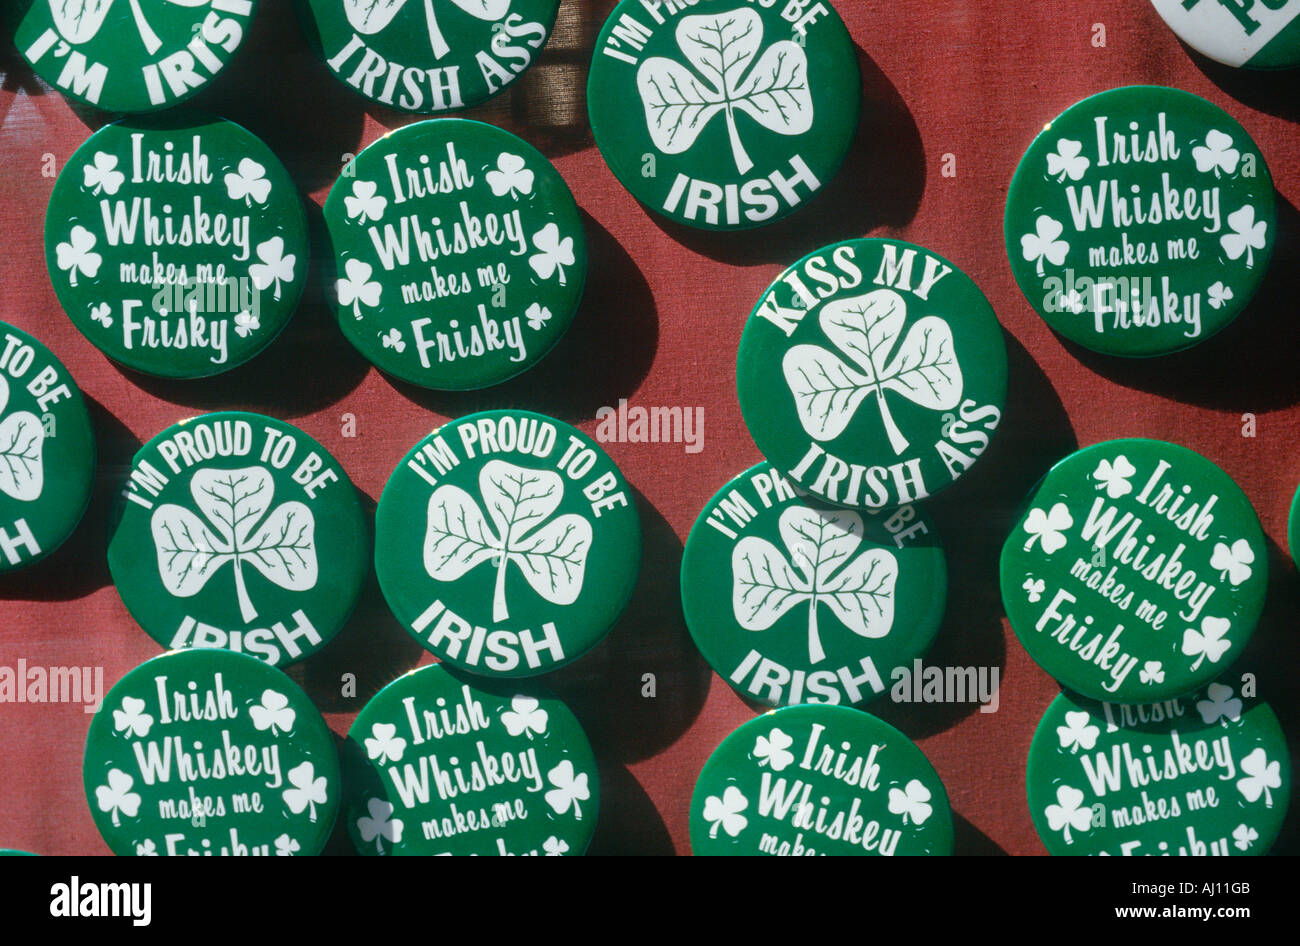 St Patrick s Day Irish pride afficher les boutons Banque D'Images